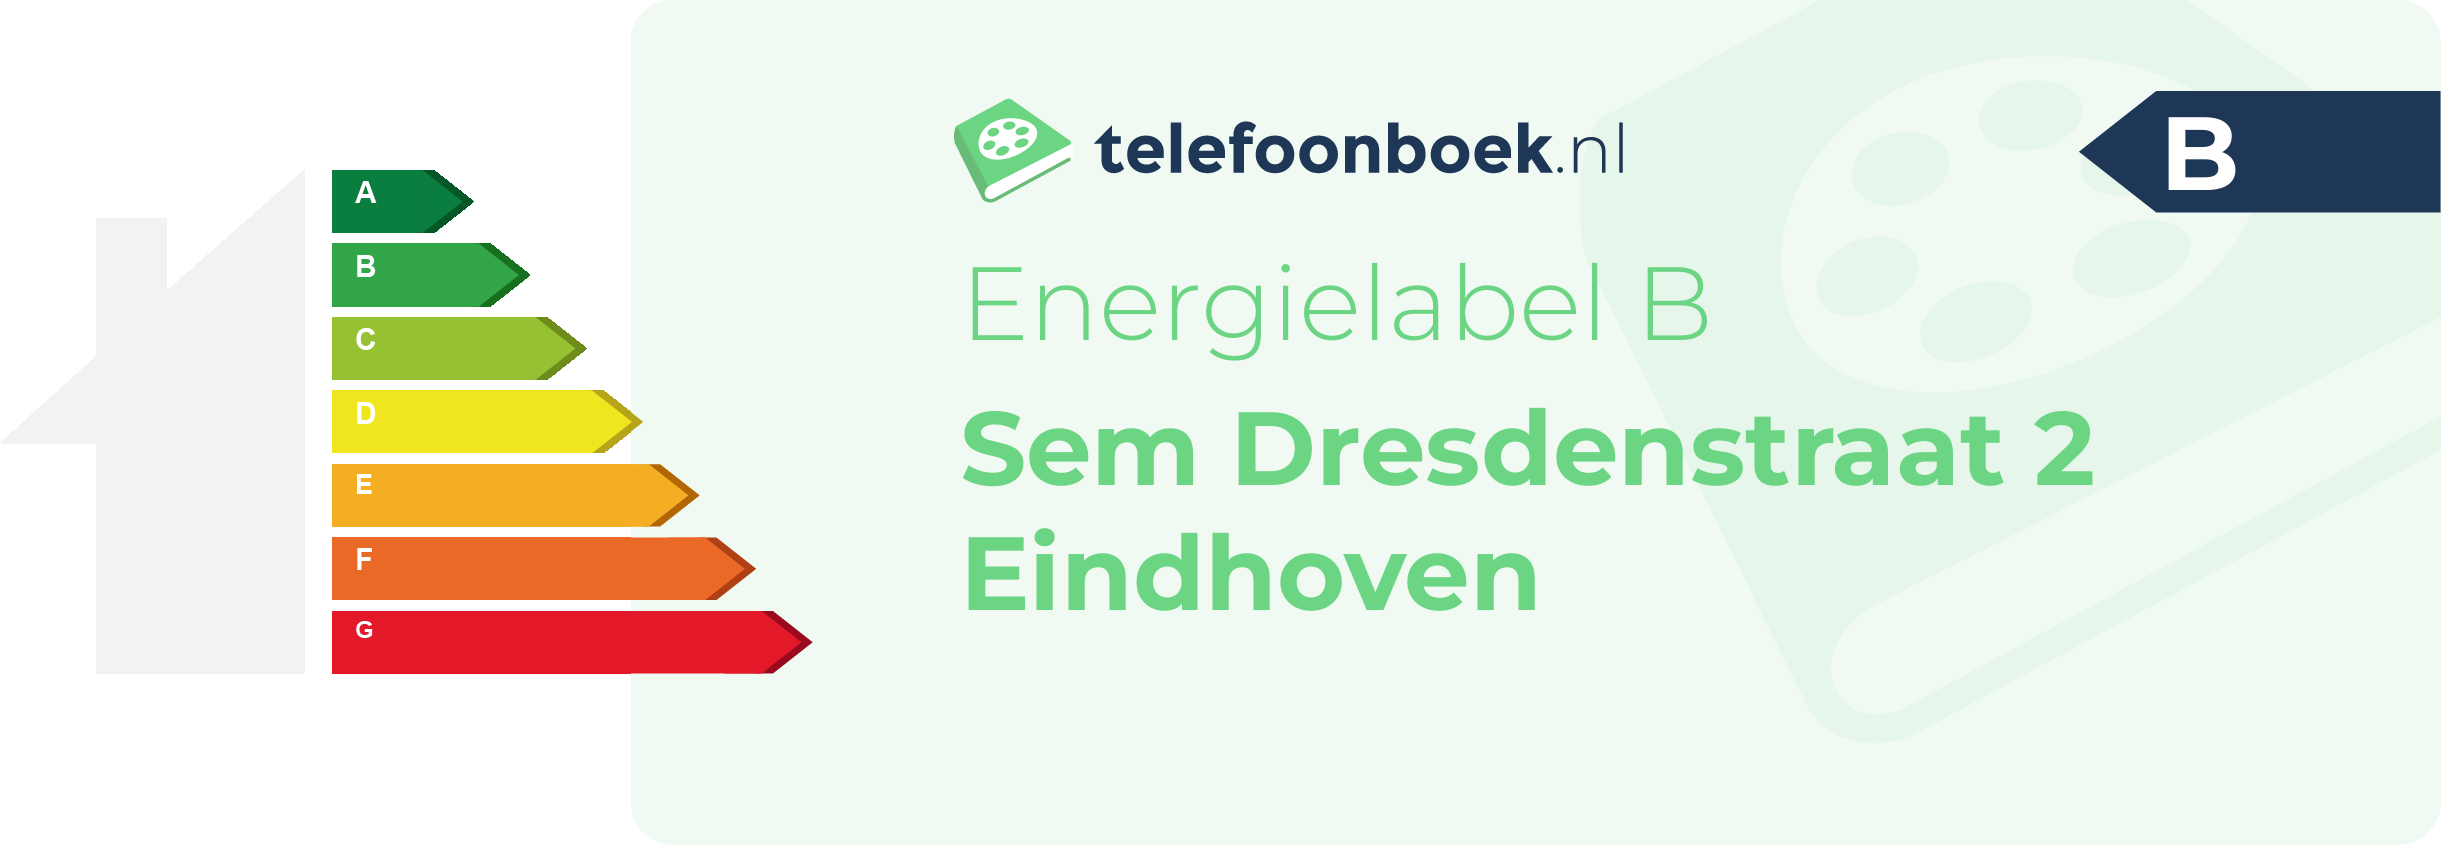 Energielabel Sem Dresdenstraat 2 Eindhoven